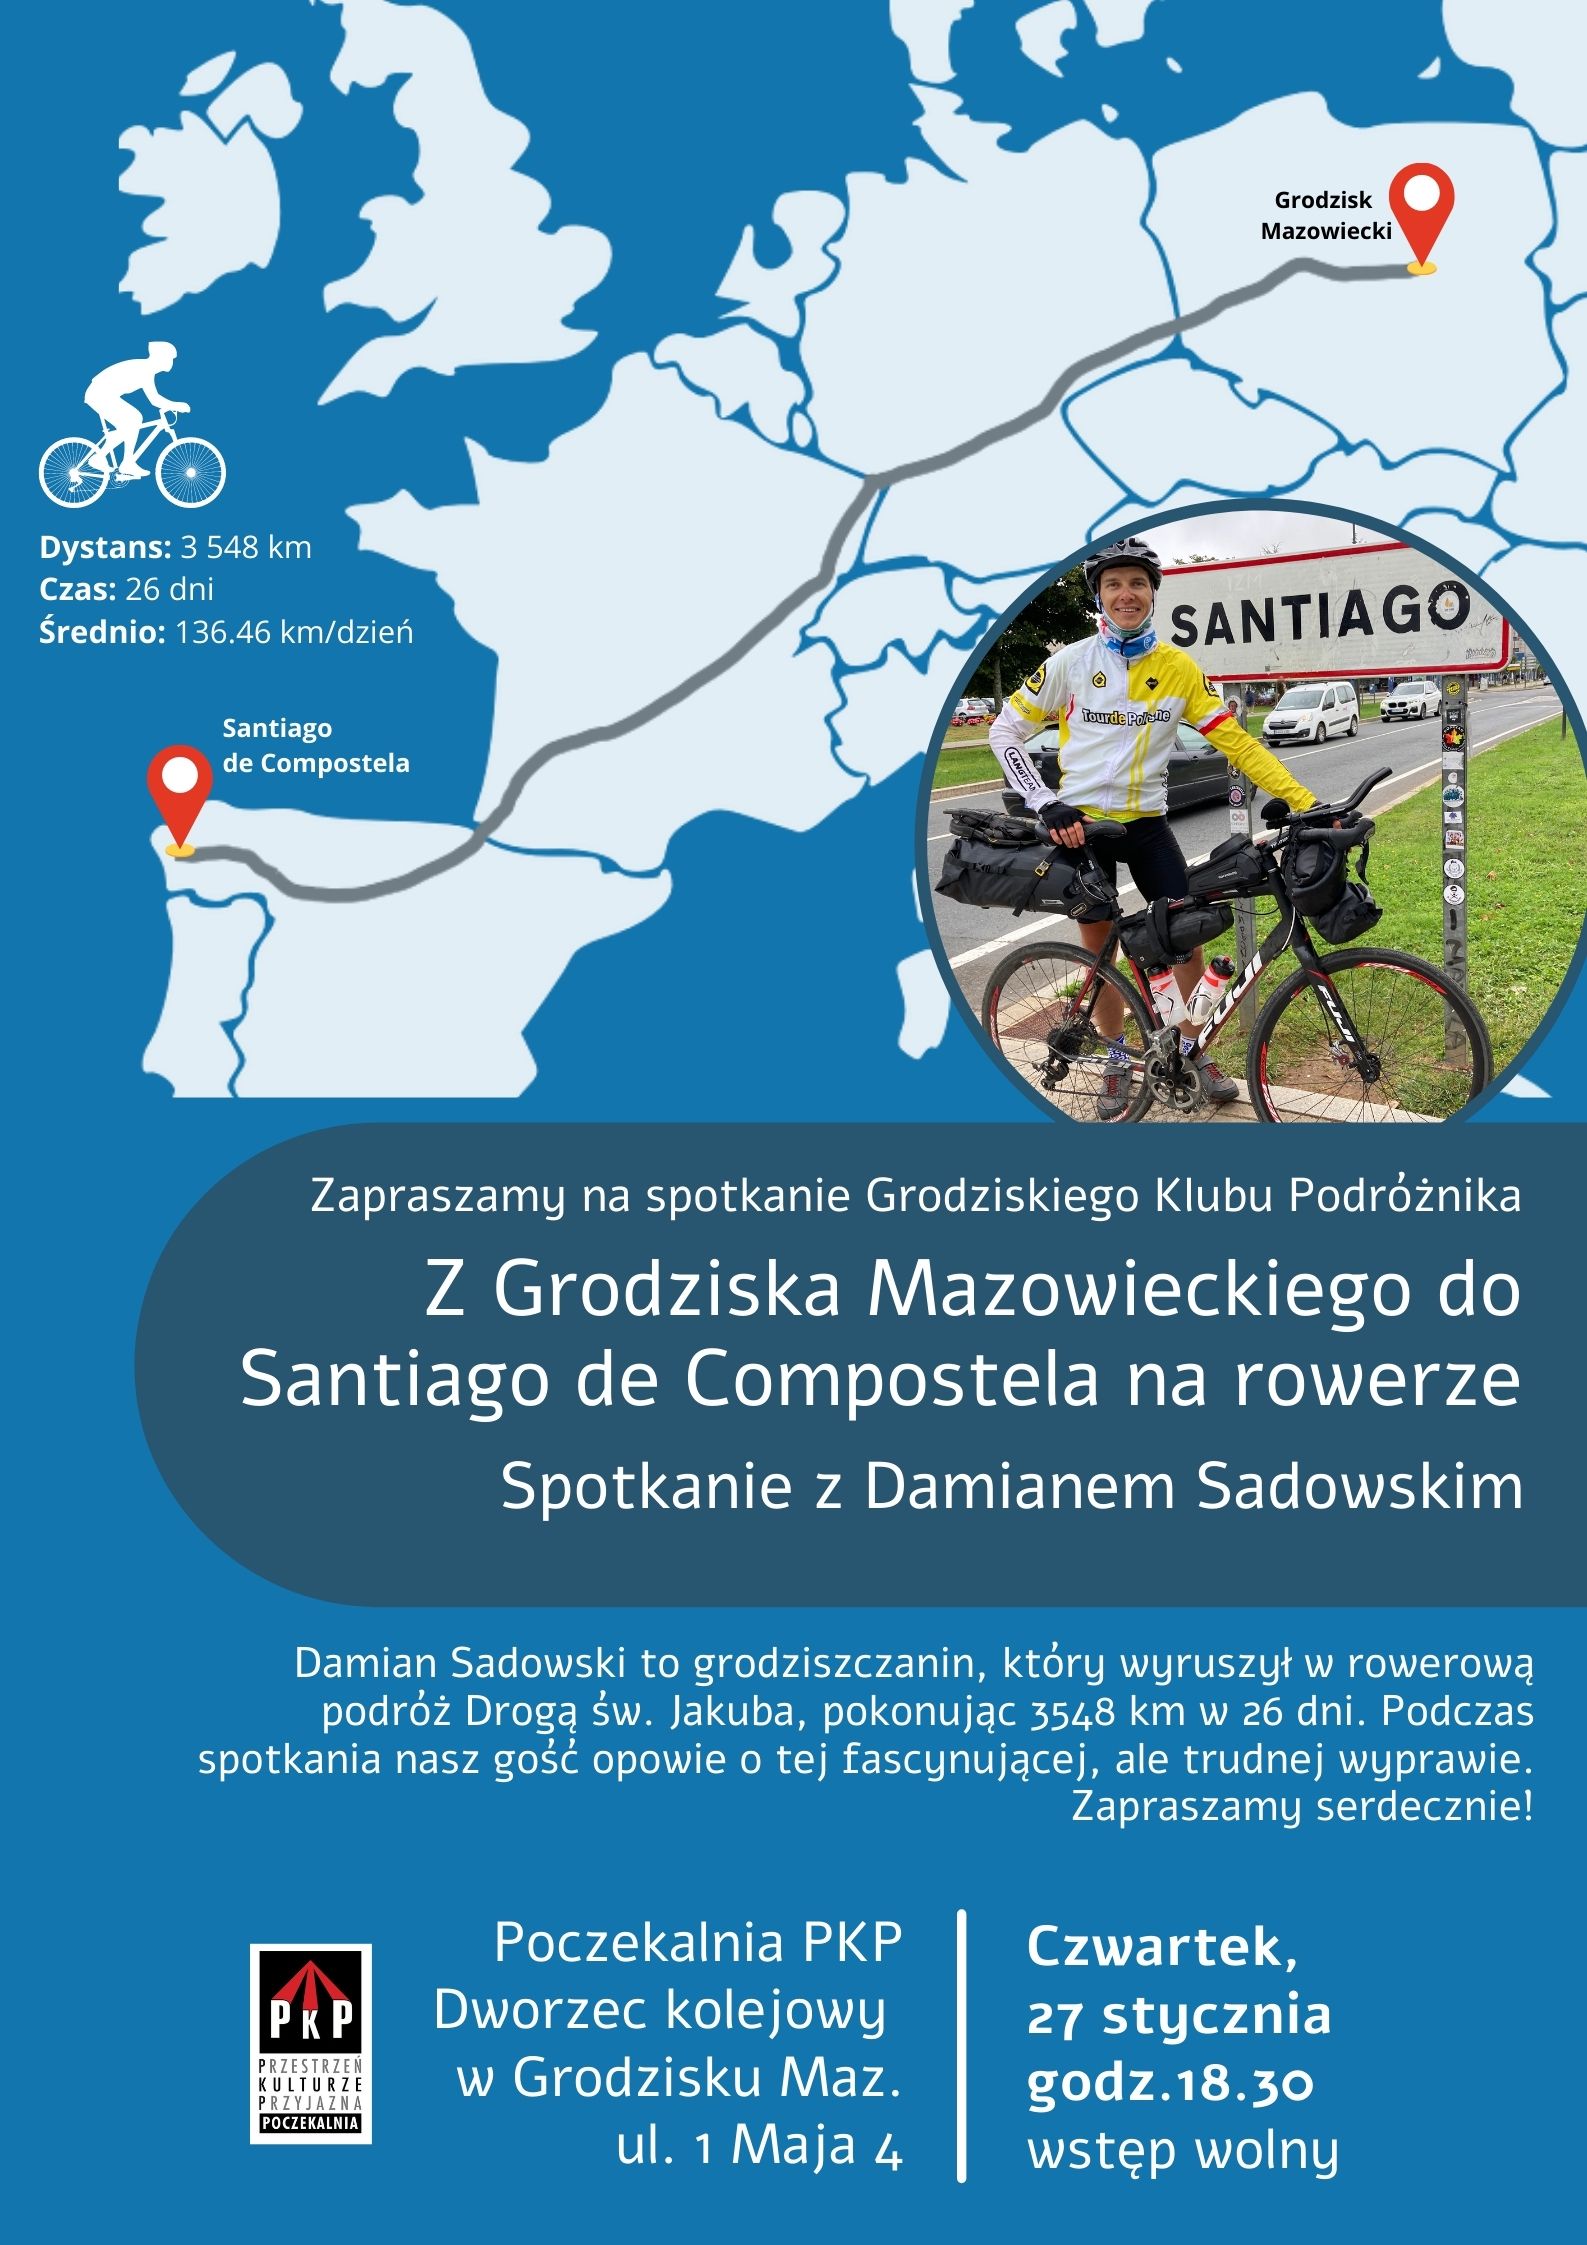 Z Grodziska Mazowieckiego do Santiago de Compostela na rowerze – spotkanie z Damianem Sadowskim